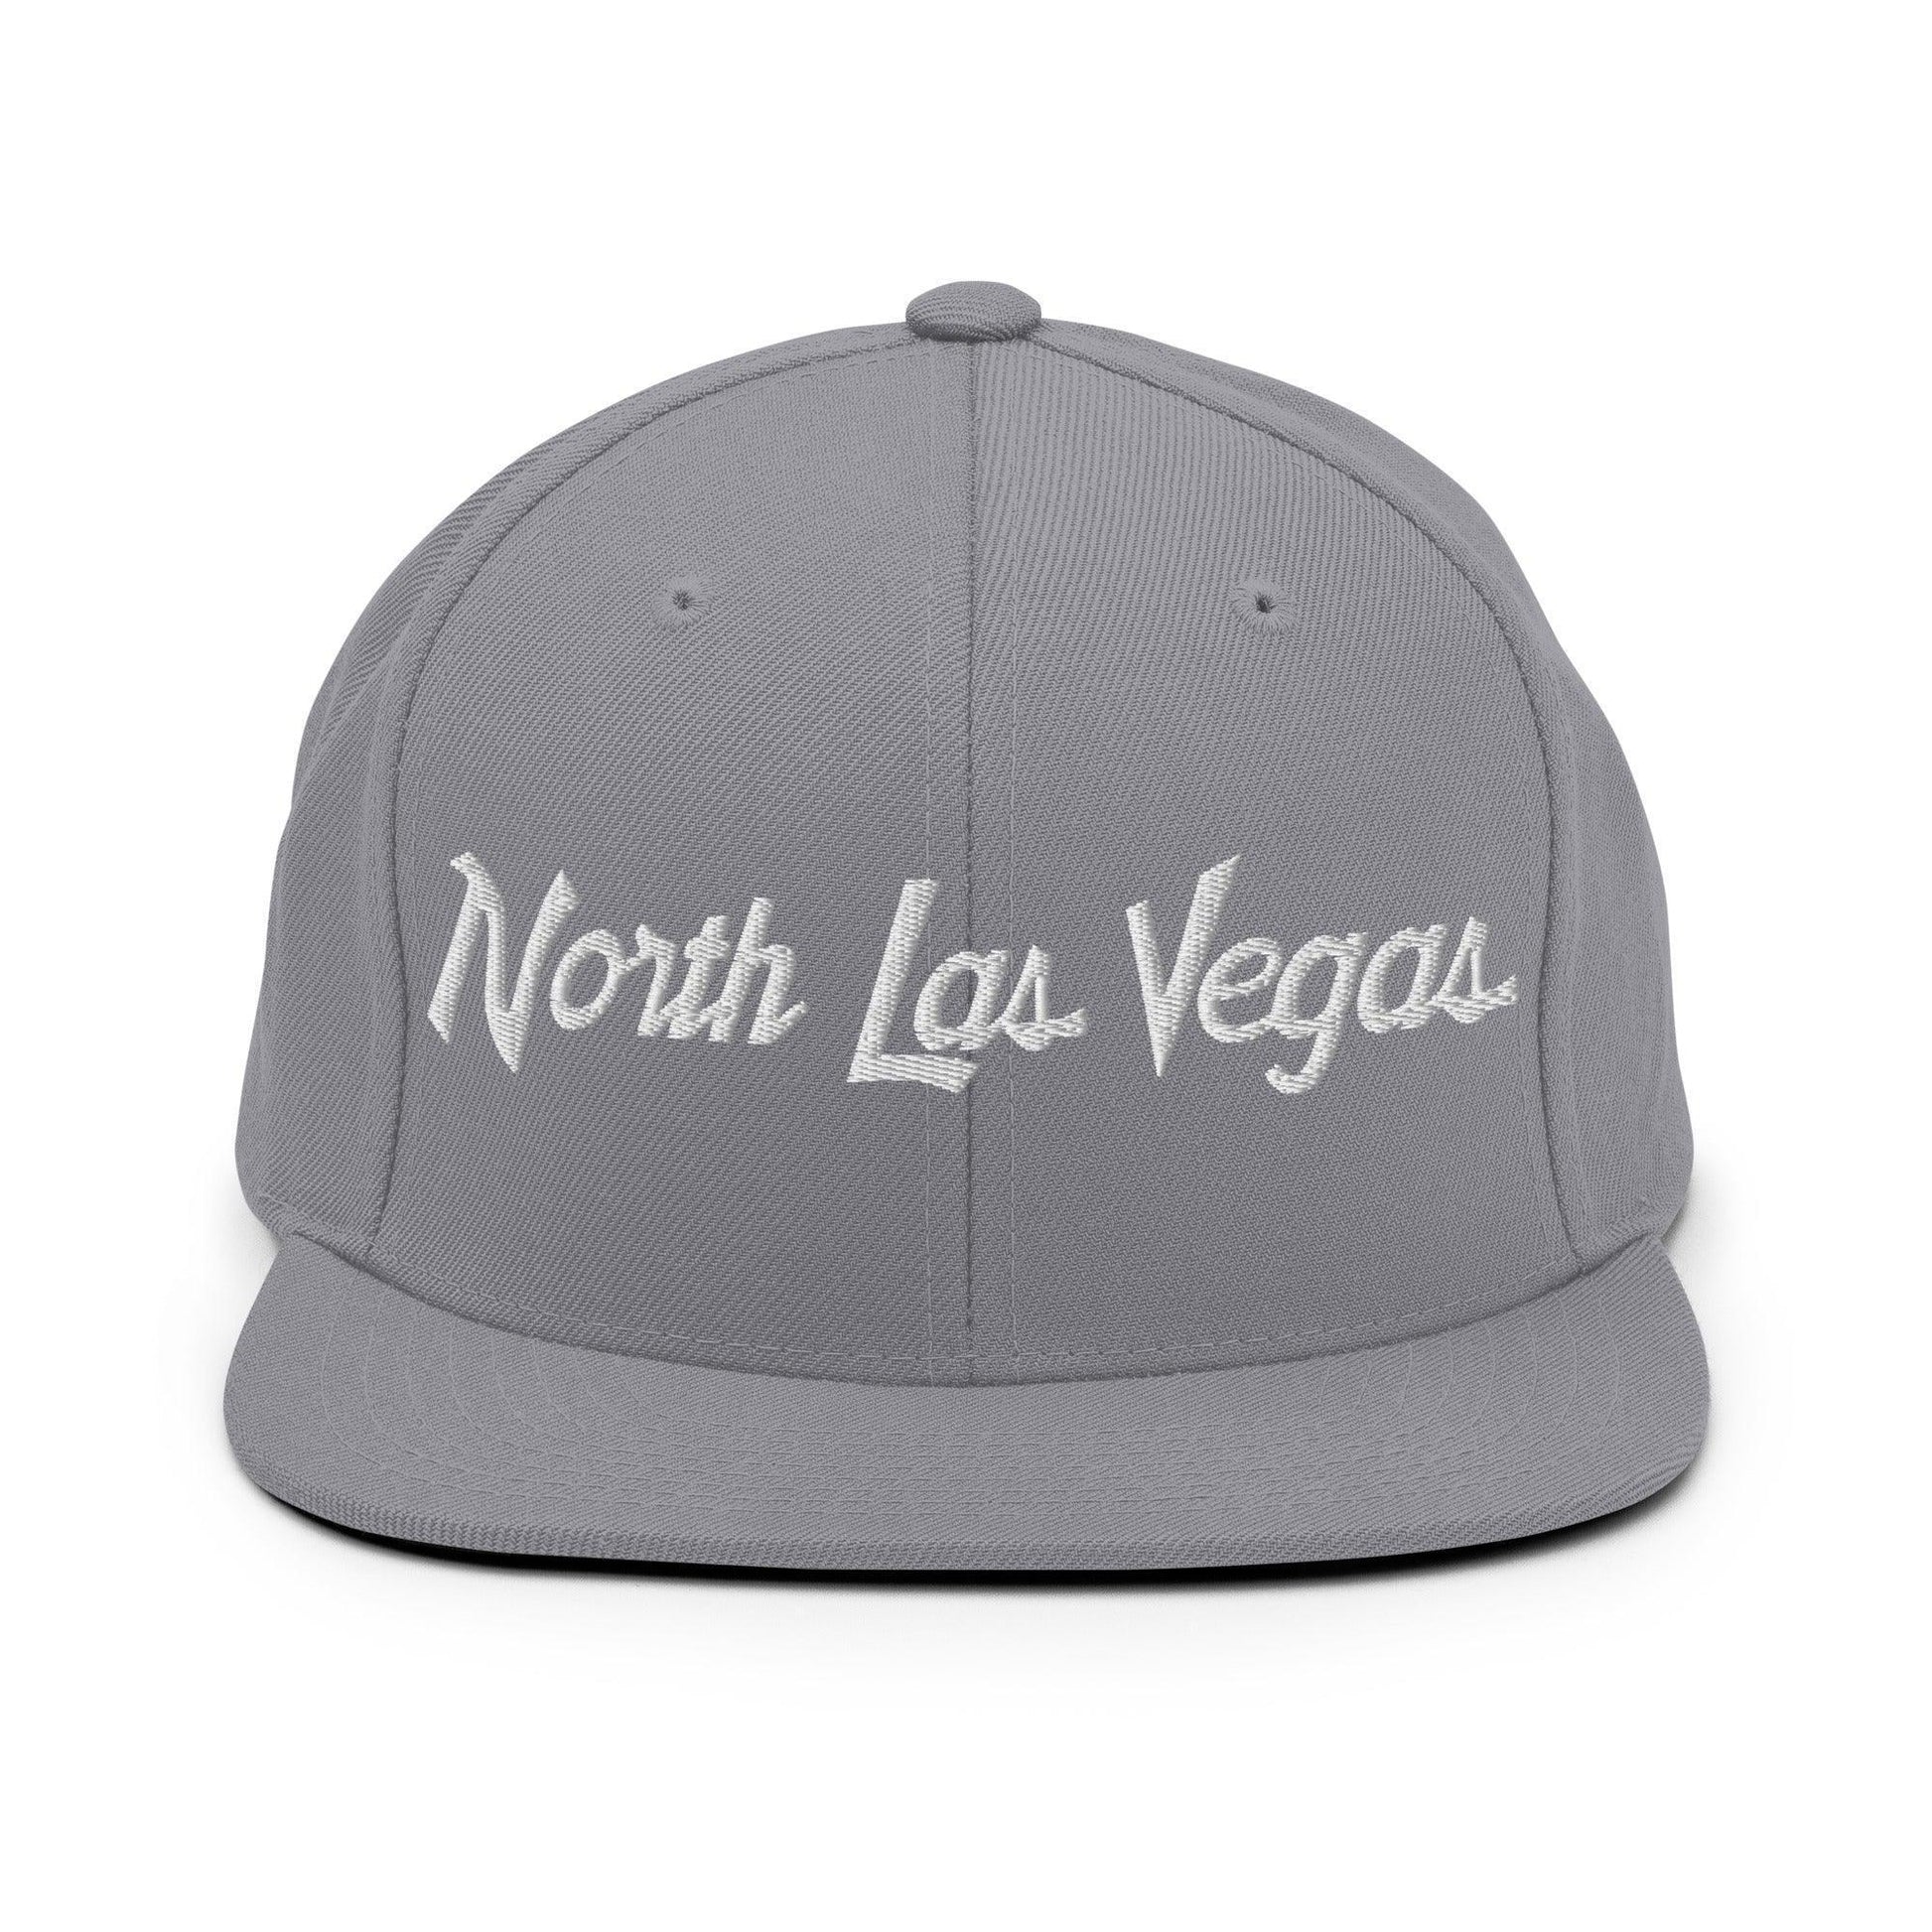 North Las Vegas Script Snapback Hat Silver